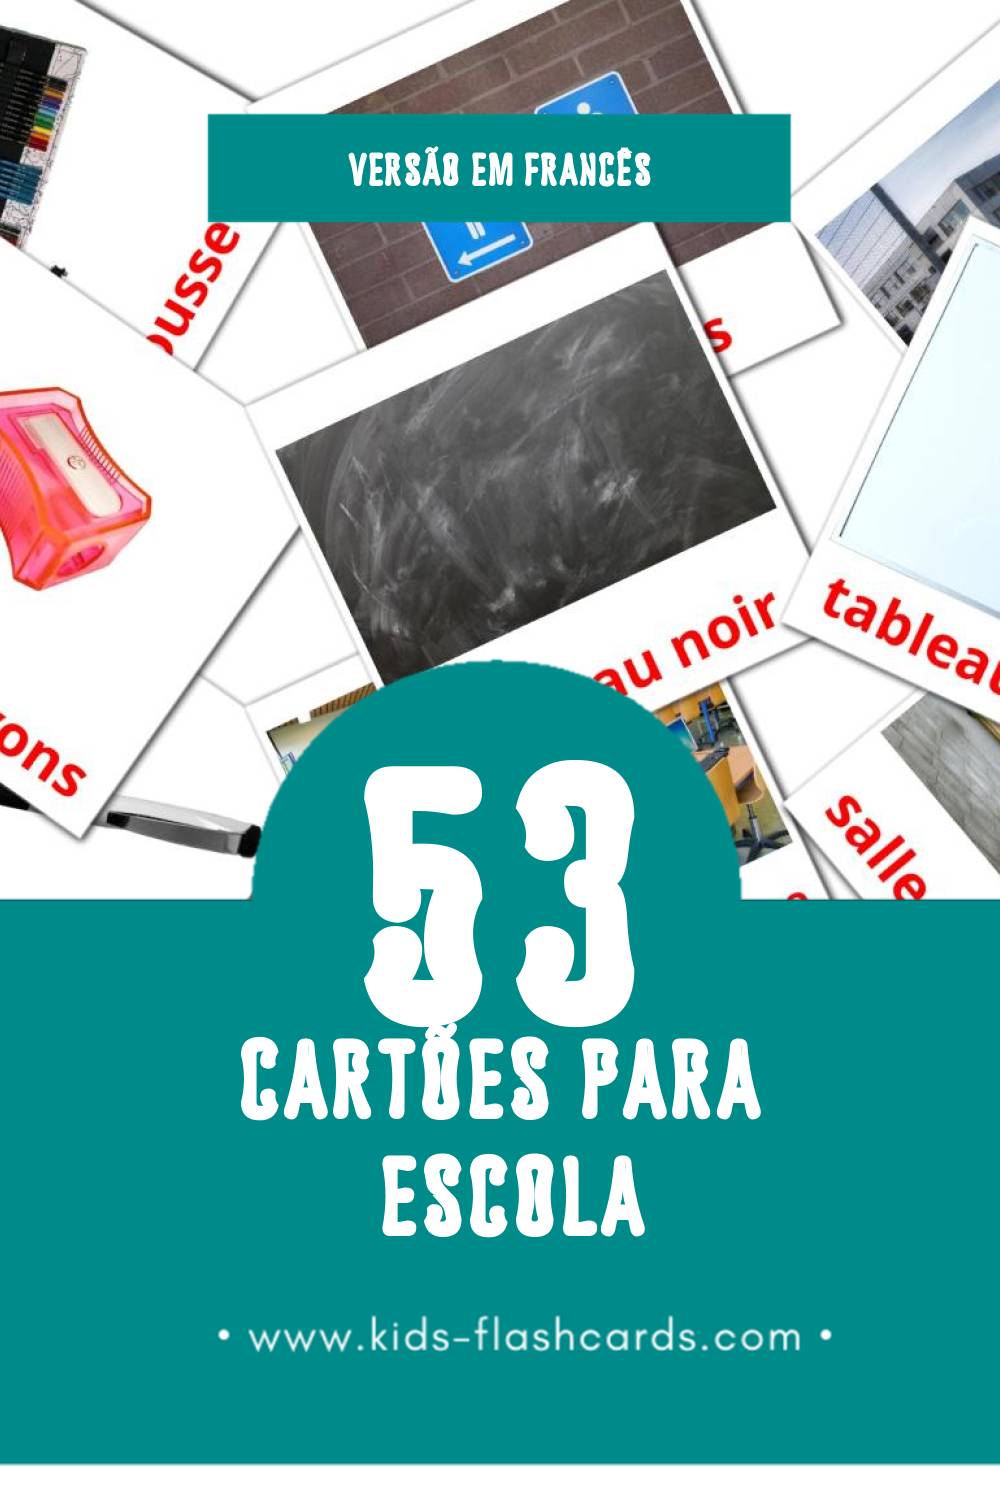 Flashcards de École Visuais para Toddlers (53 cartões em Francês)